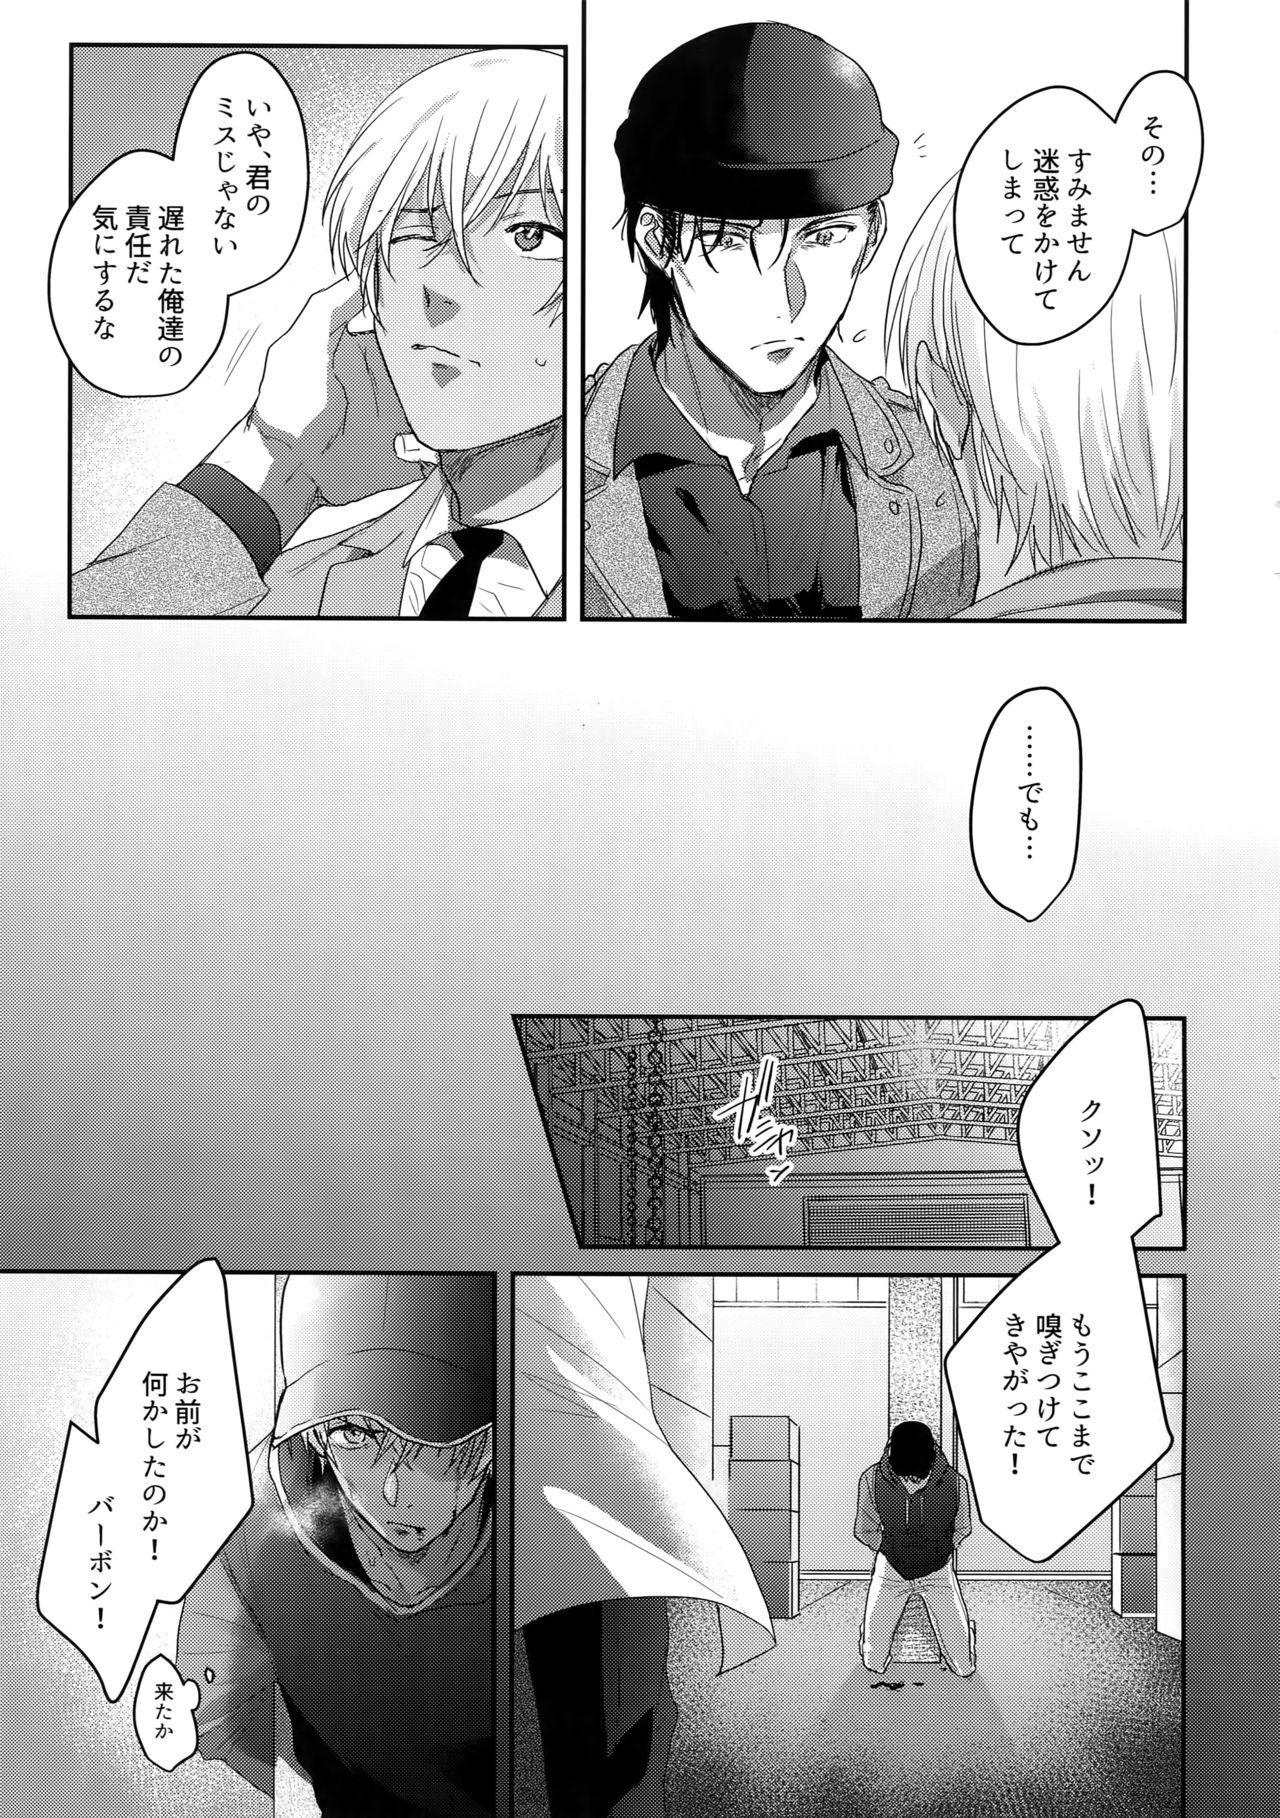 Twinks A… Akai no ×× Kudasai! - Detective conan Insertion - Page 4